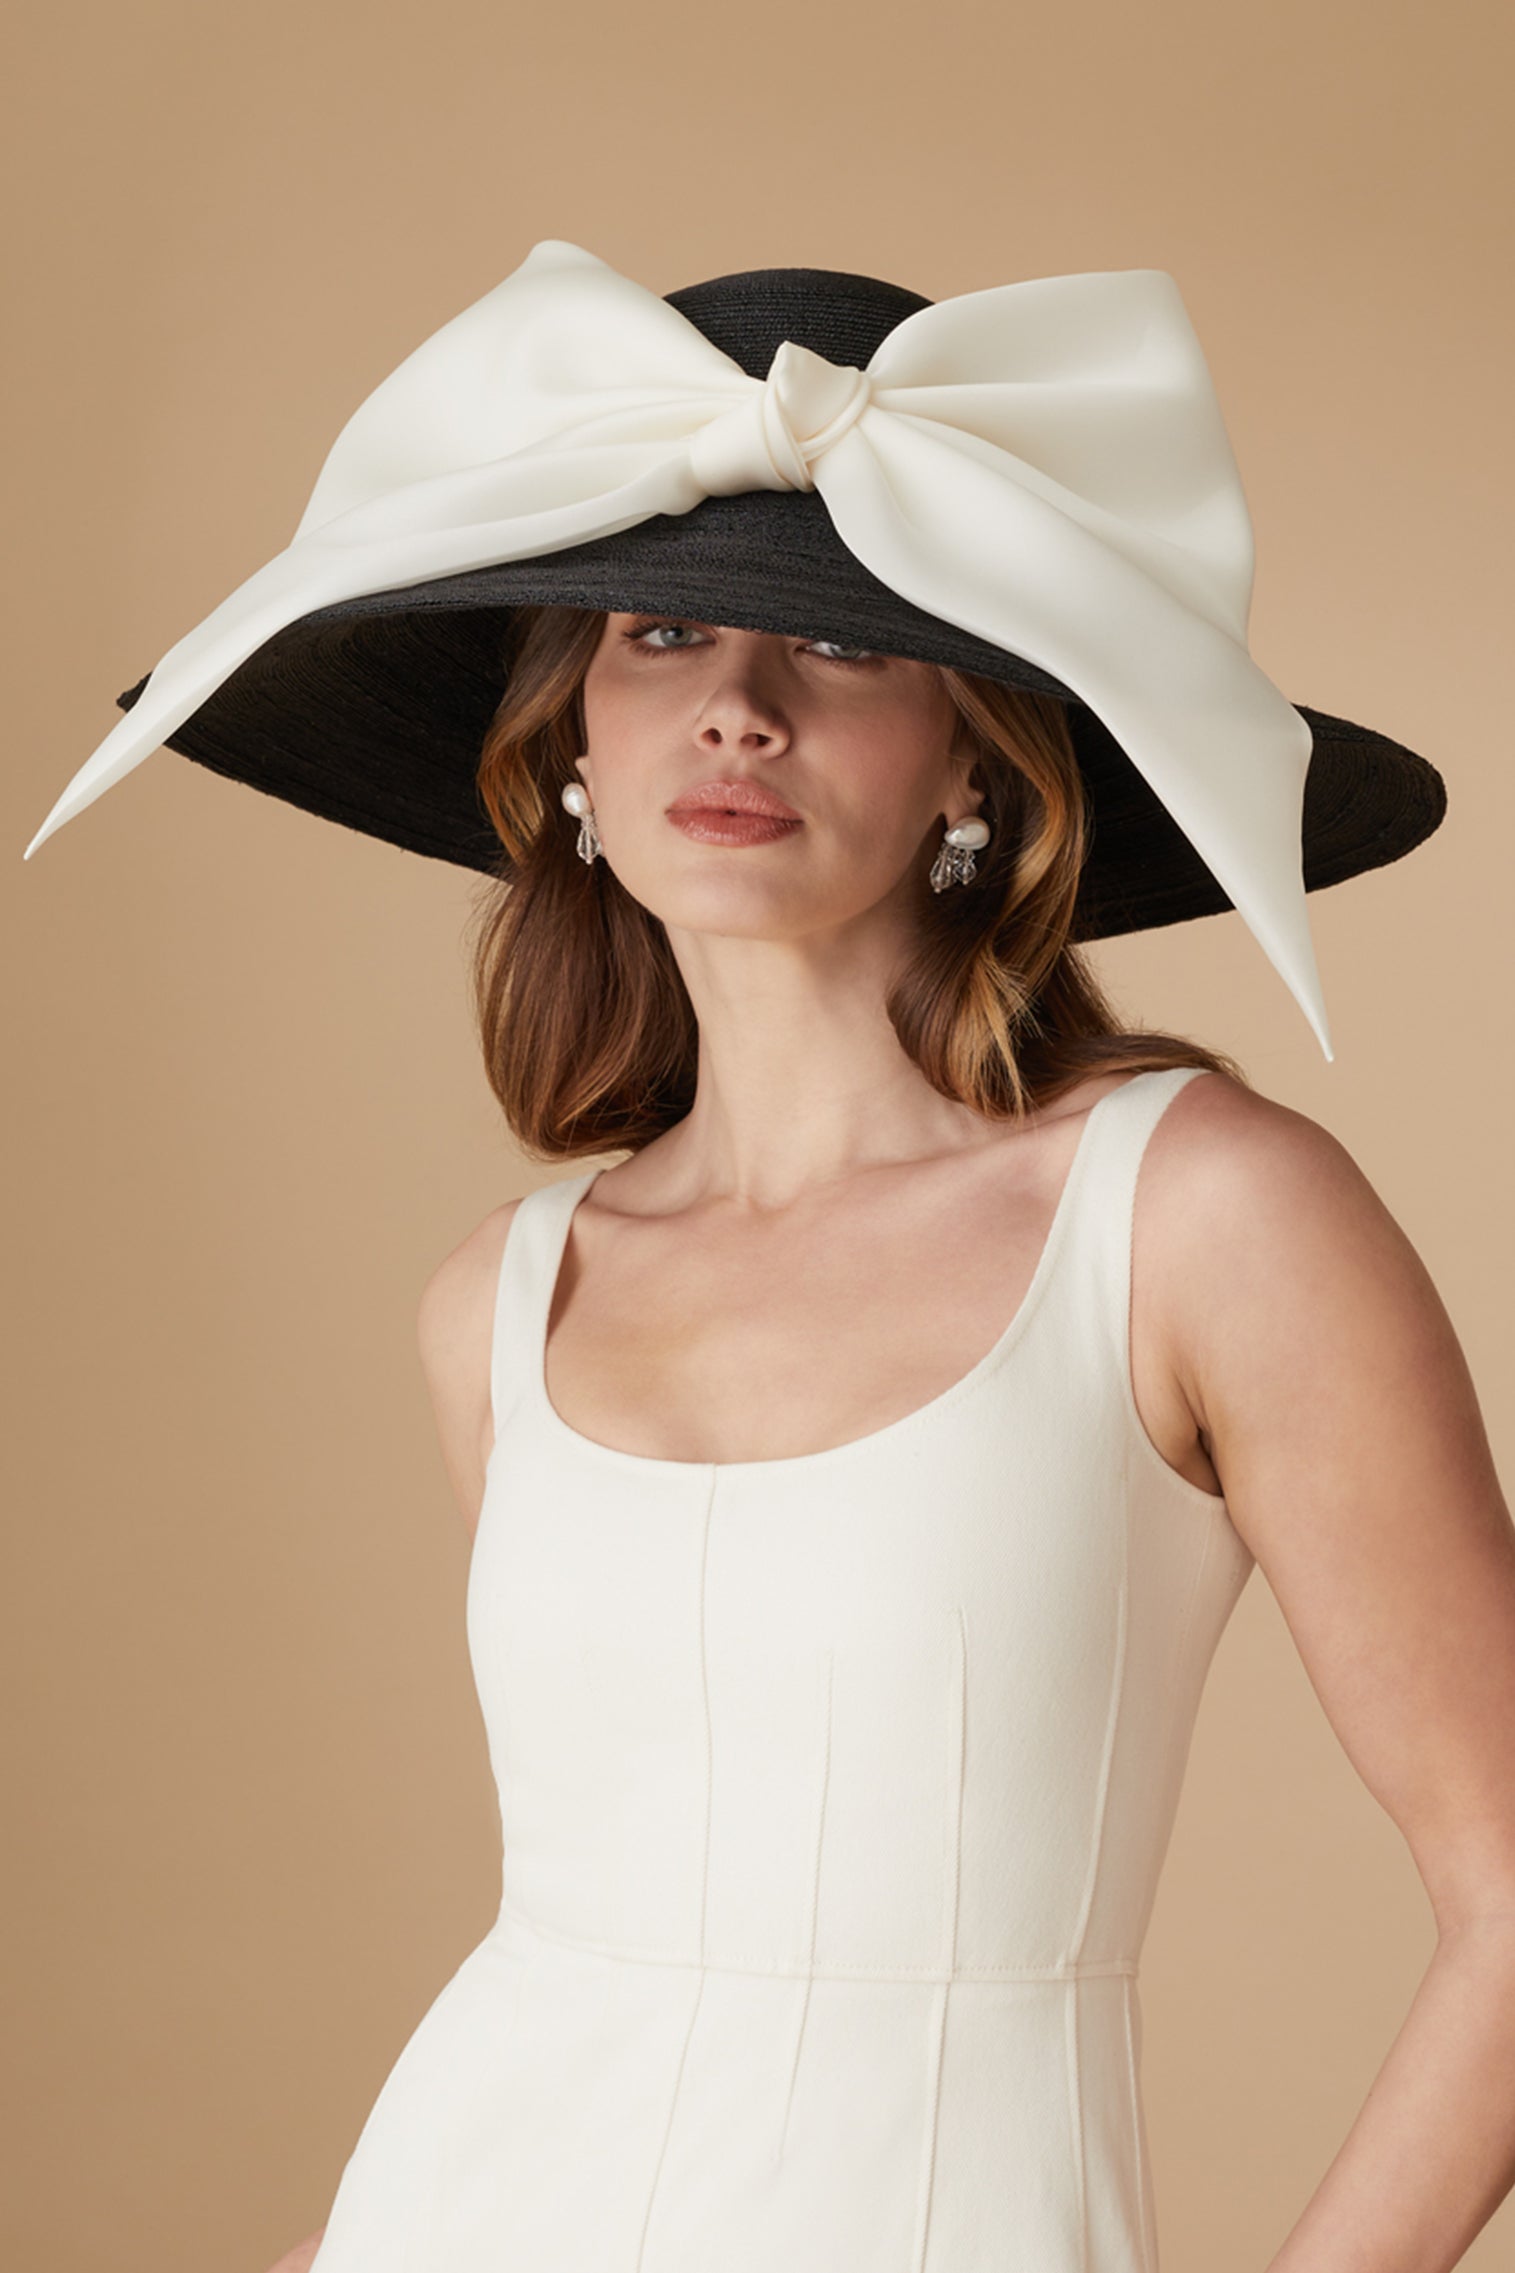 Darjeeling Black Wide Brim Hat - Panamas, Straw and Sun Hats for Women - Lock & Co. Hatters London UK